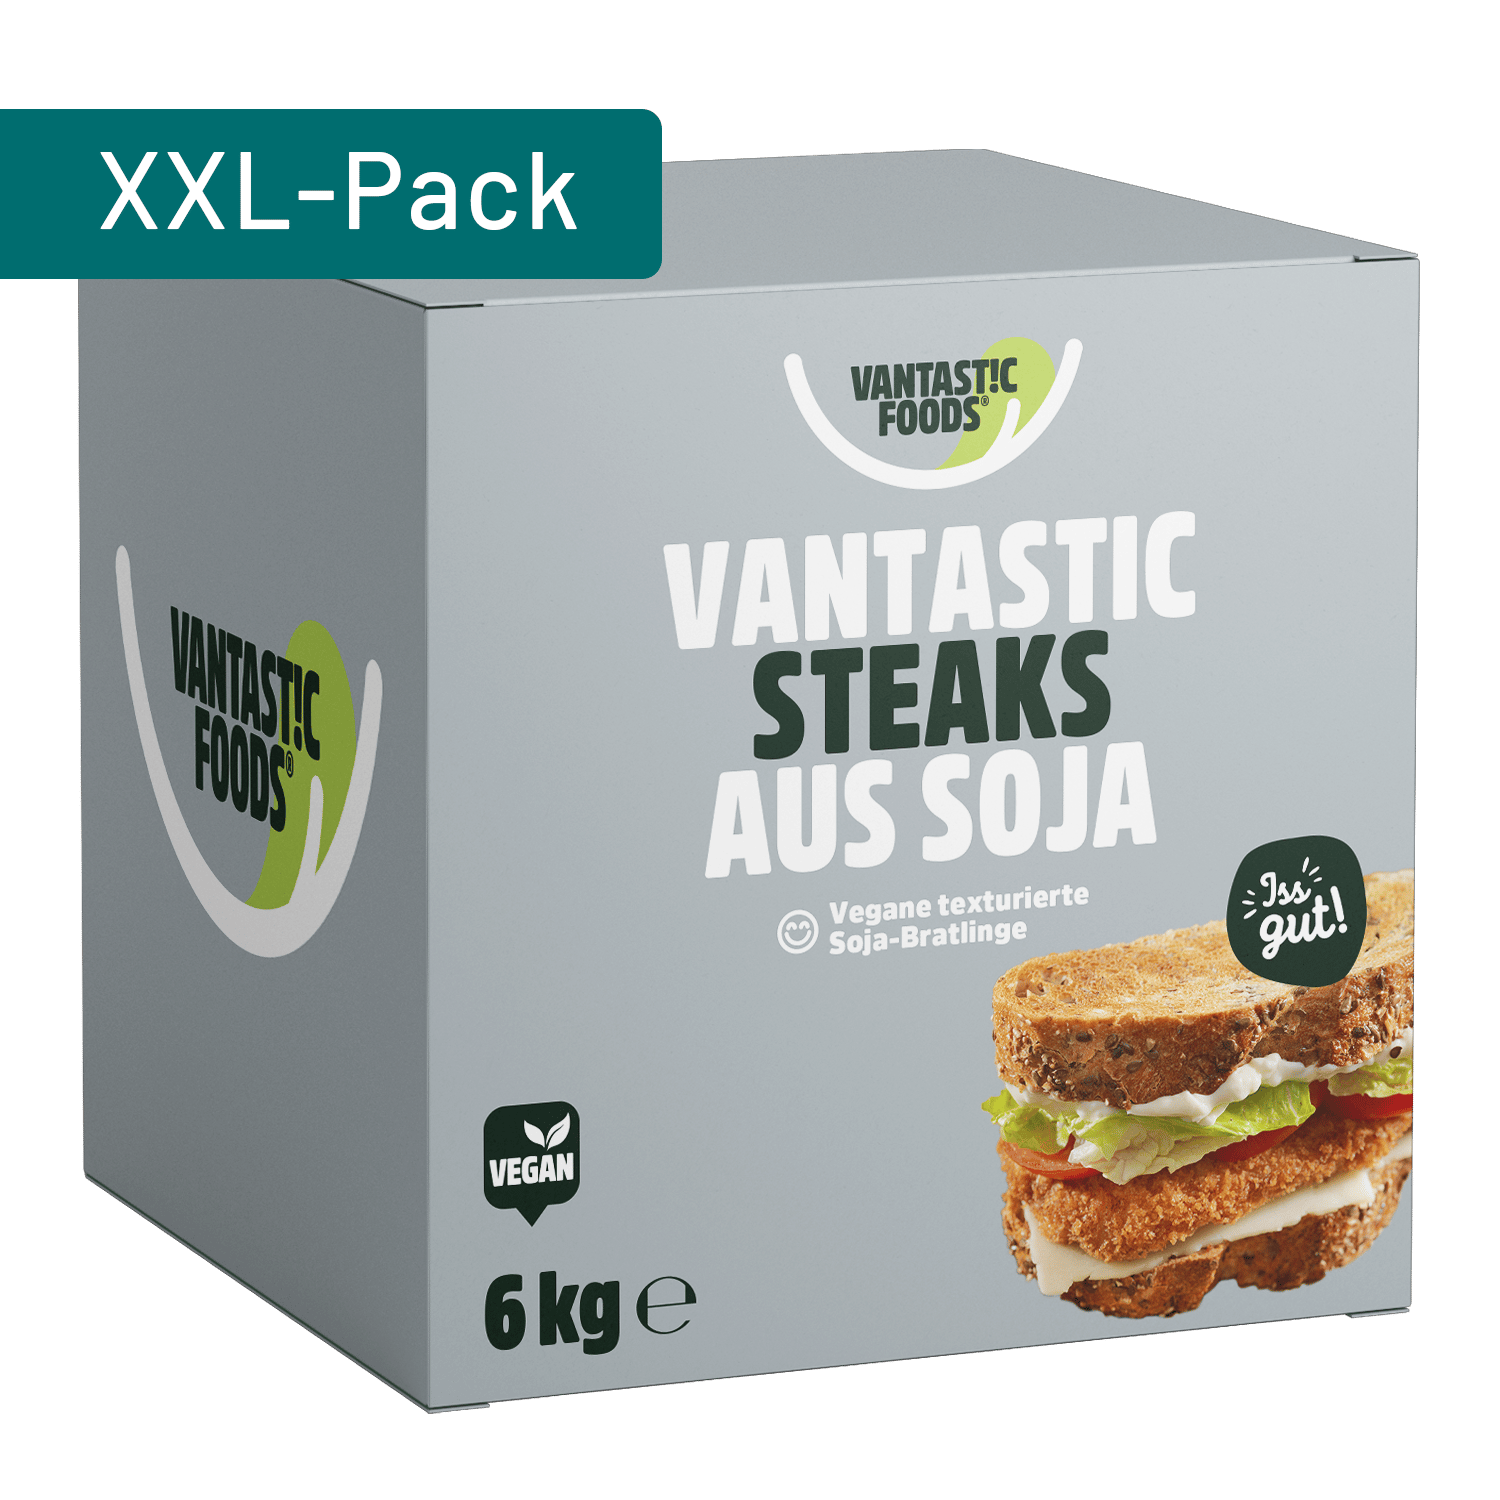 Vantastic Steaks aus Soja, 6kg